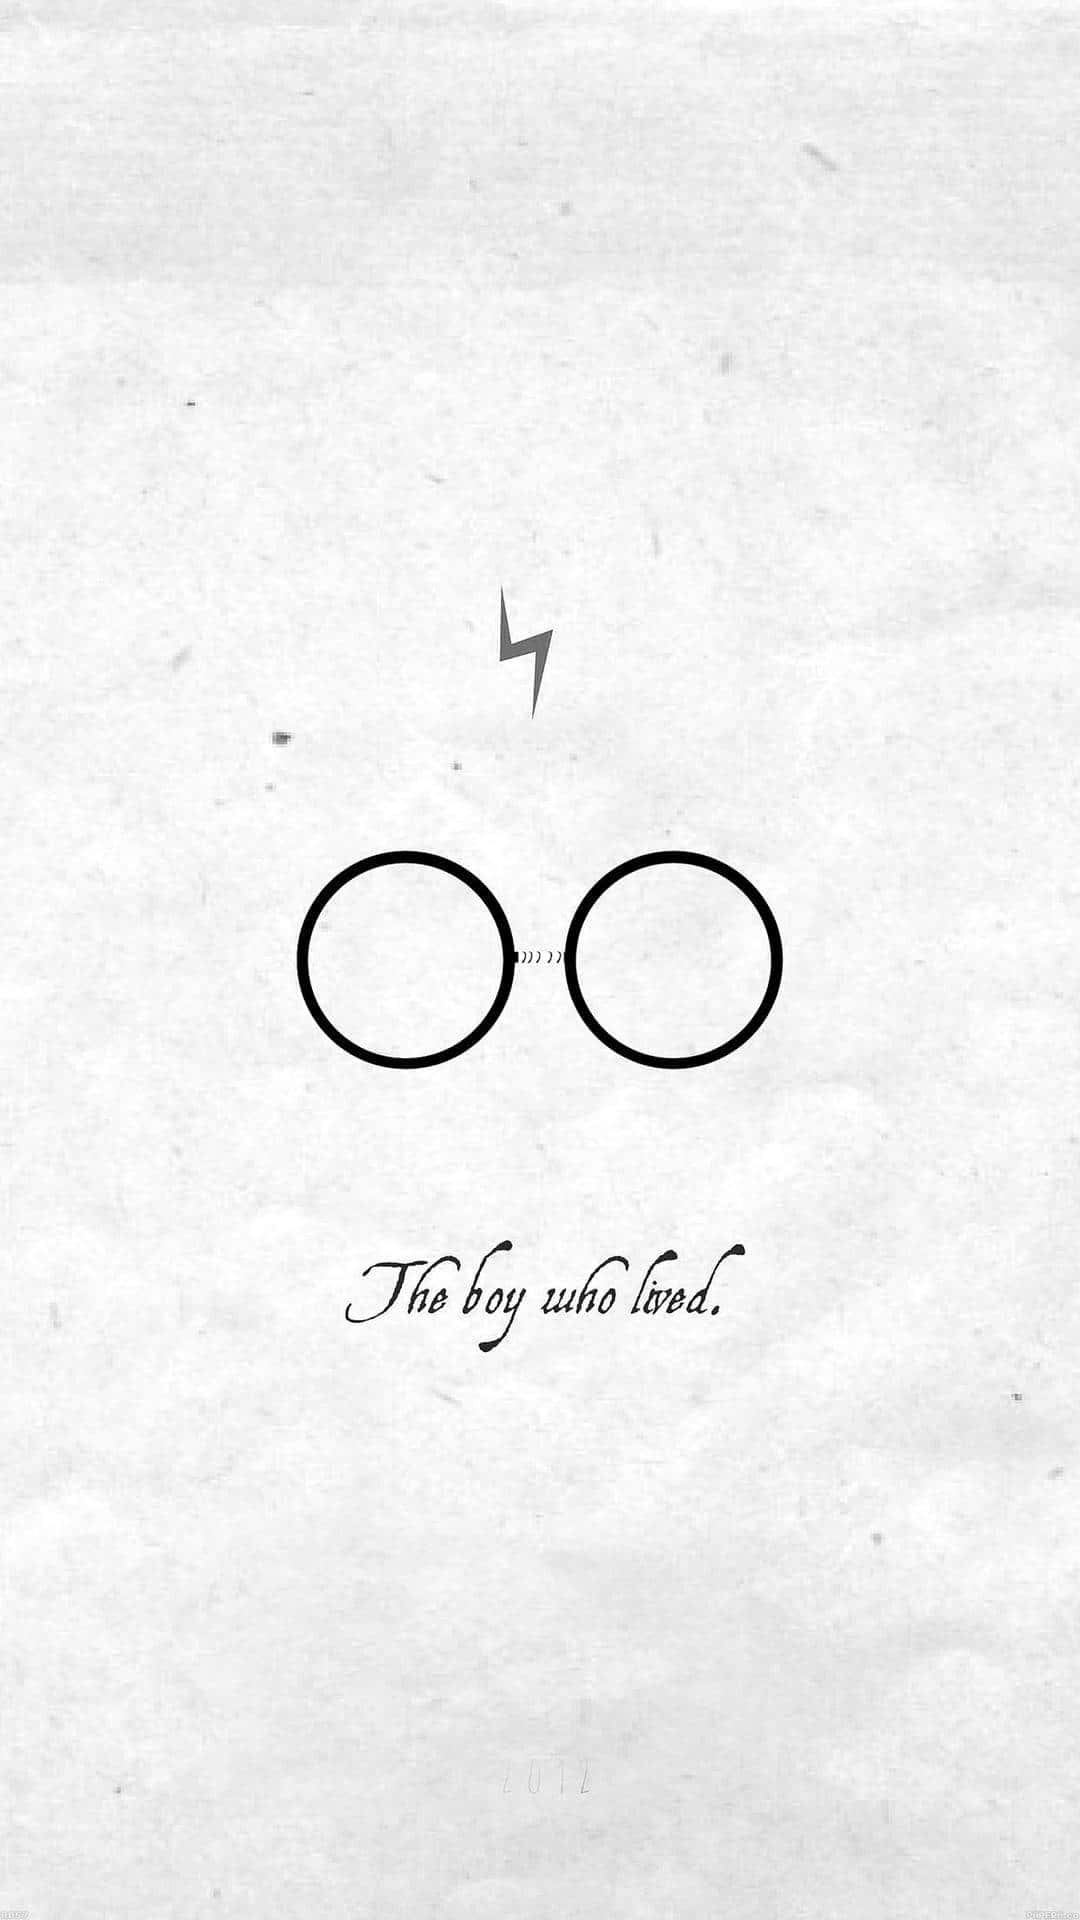 Et magisk øjeblik fanget - Harry Potter i sort og hvid. Wallpaper